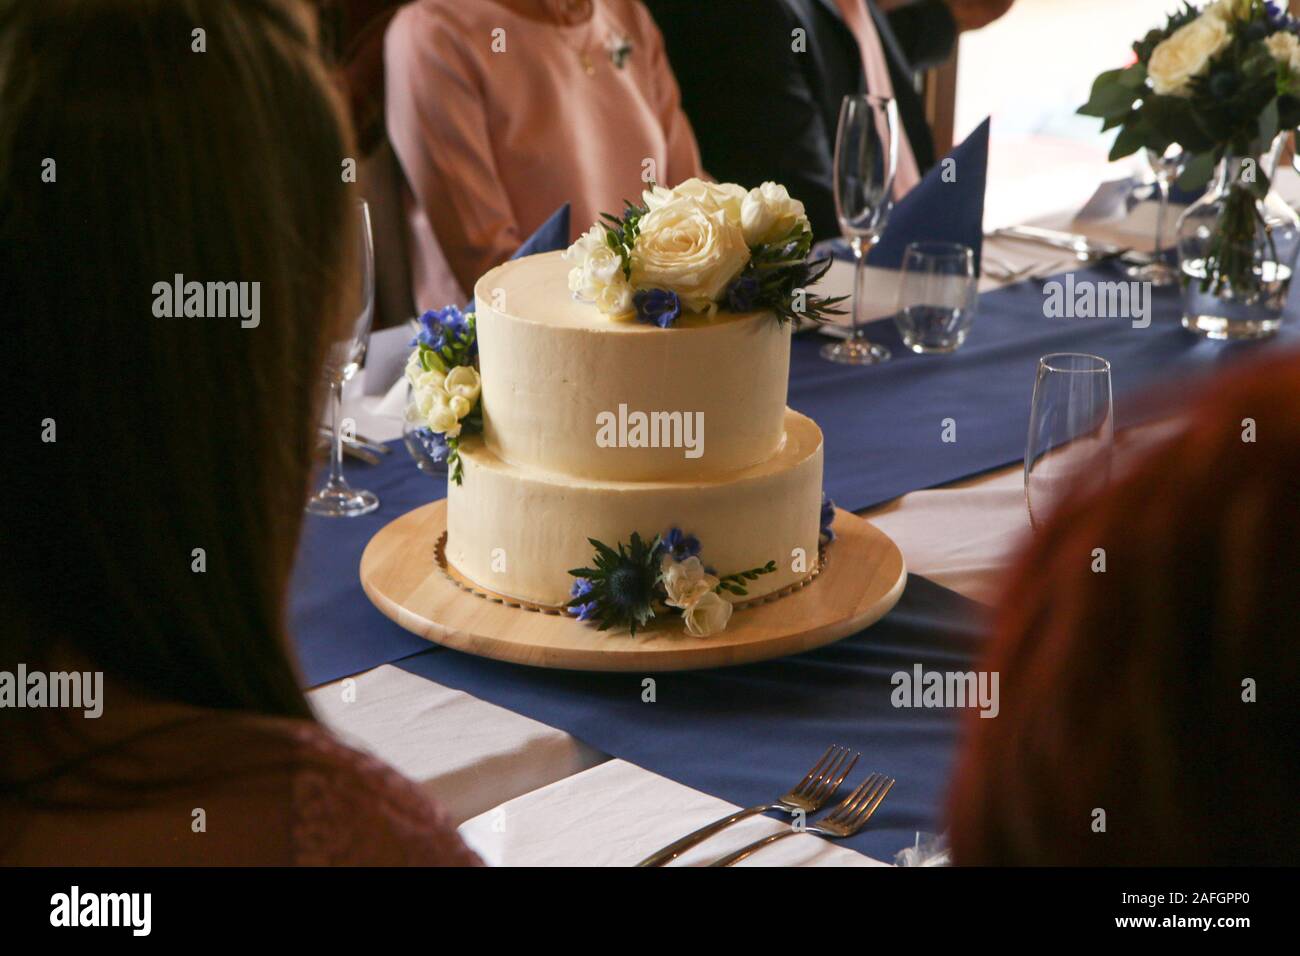 Ein Detail Foto von der großen Hochzeitstorte mit Blumenschmuck. Stockfoto